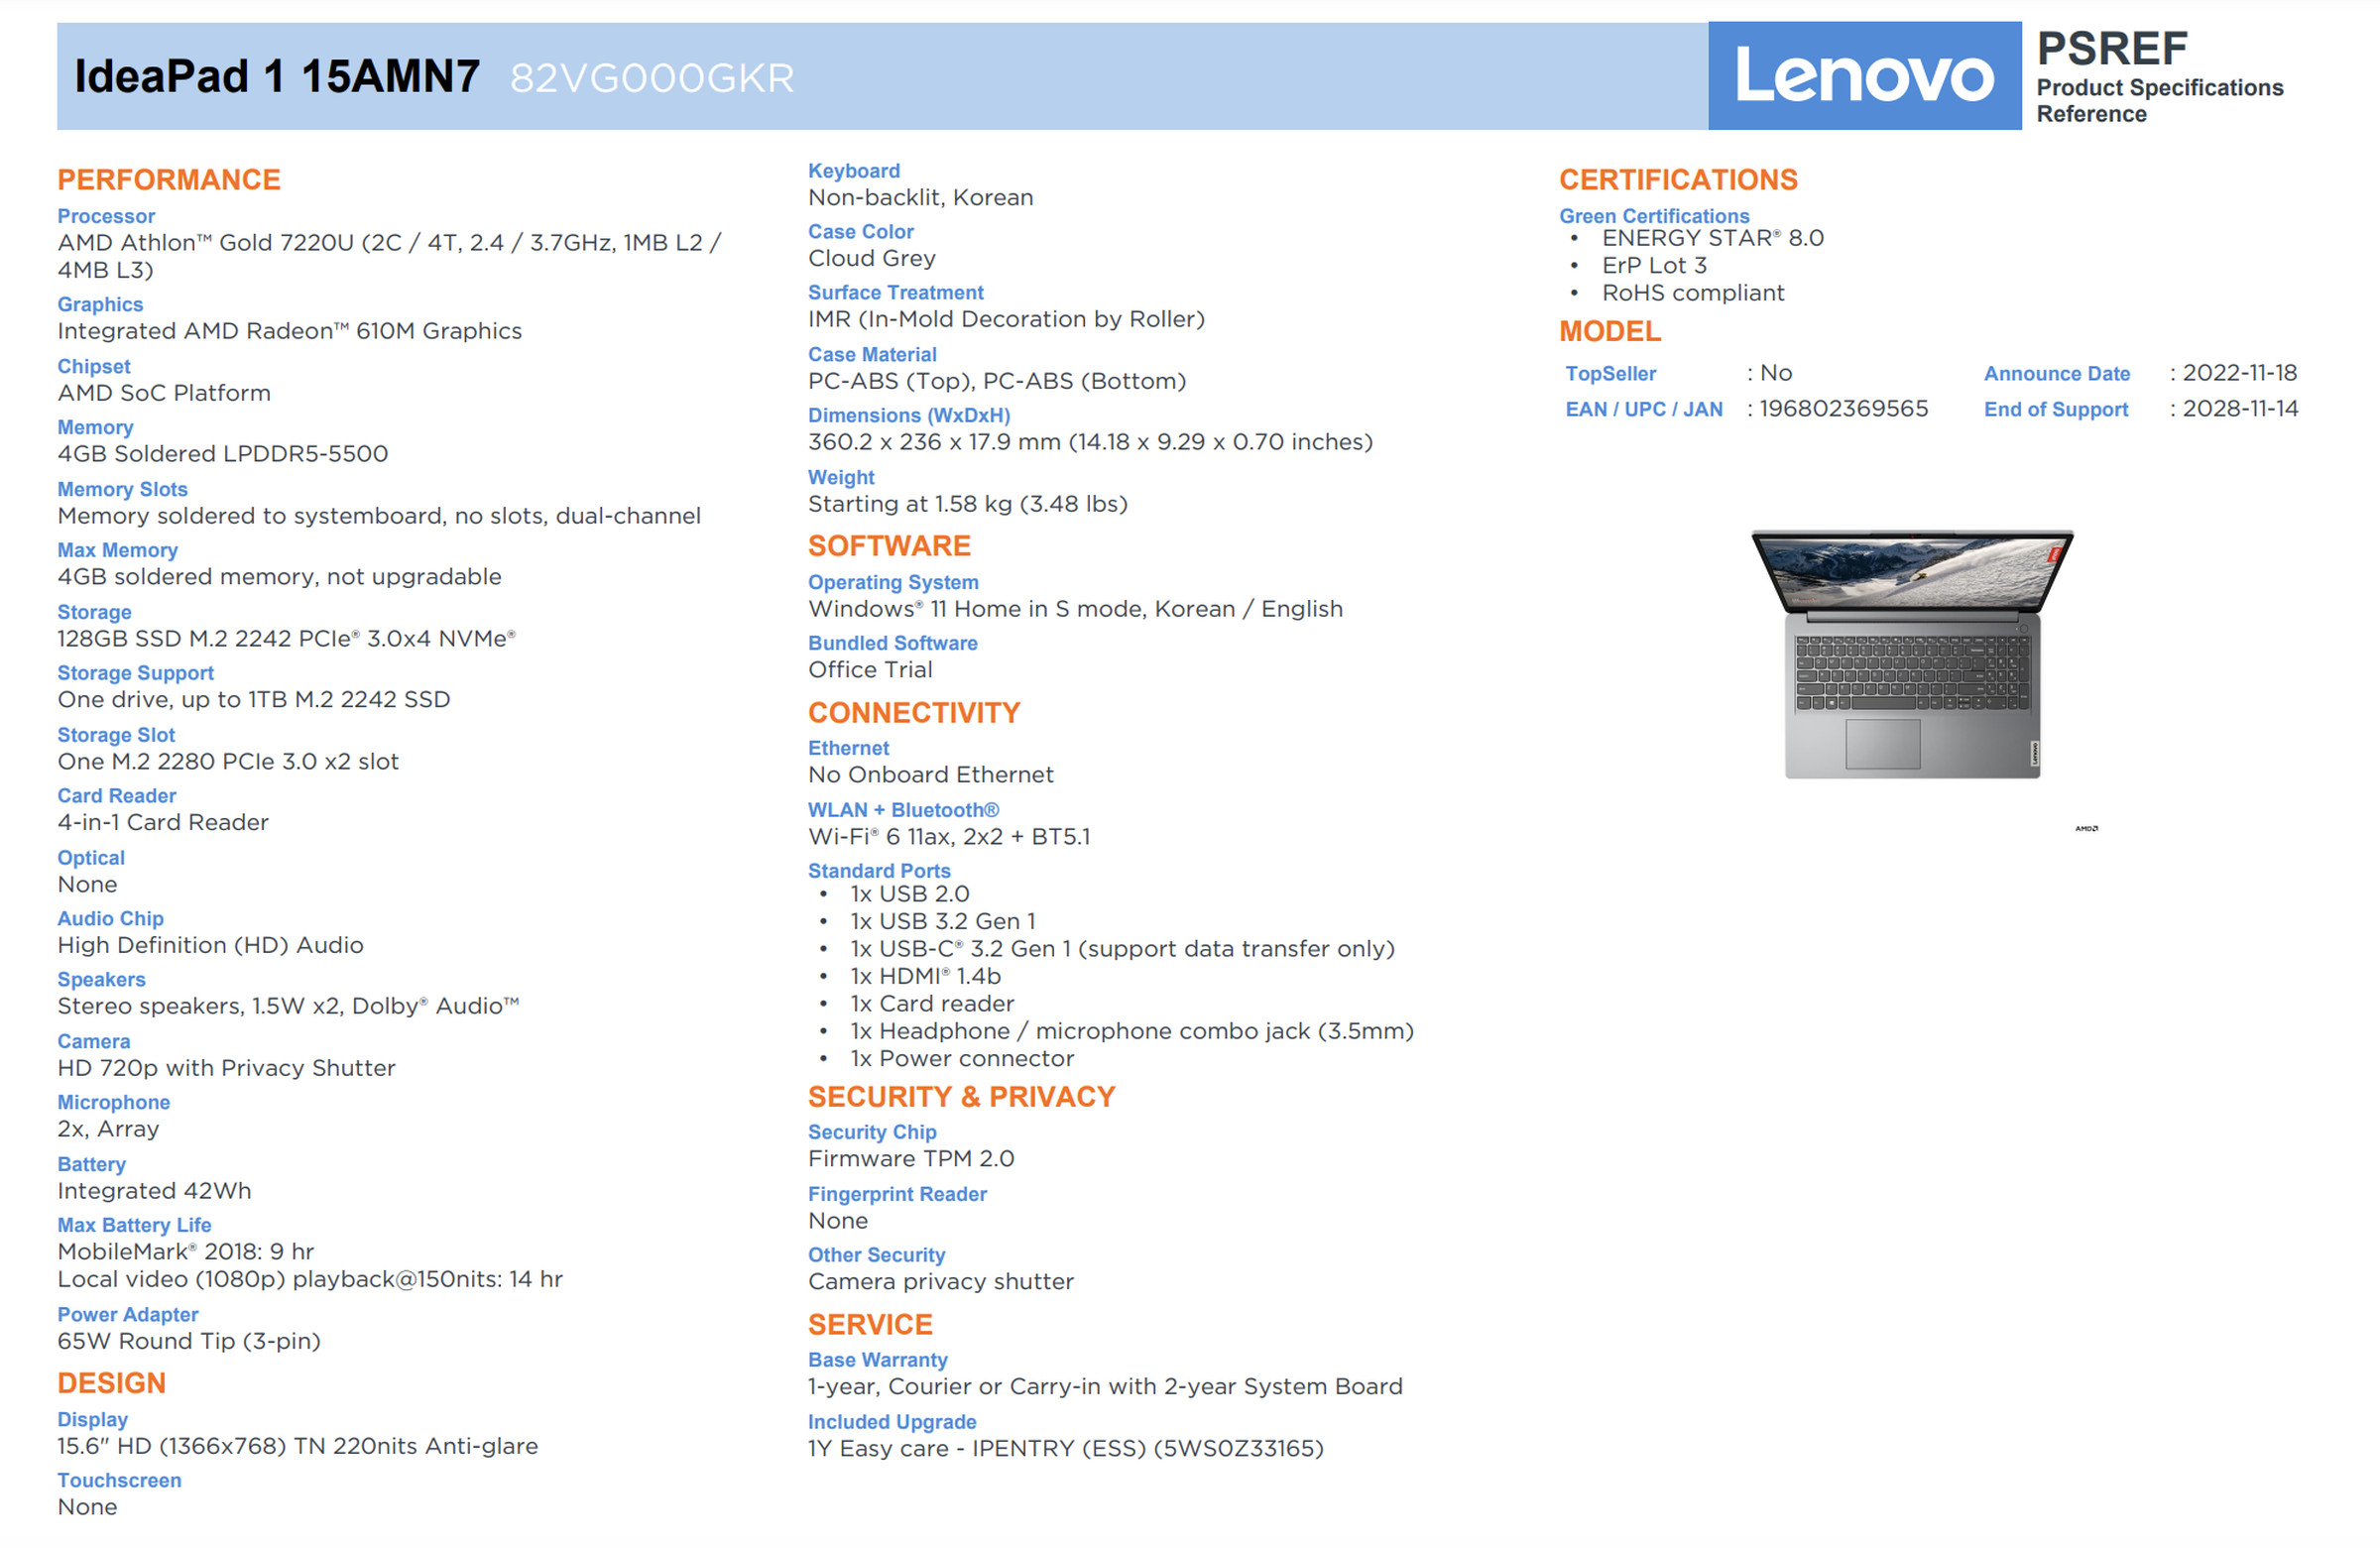 Zrzut ekranu w formacie PDF przedstawiający IdeaPad 1 przedstawiający procesor Athlon Gold 7220U.